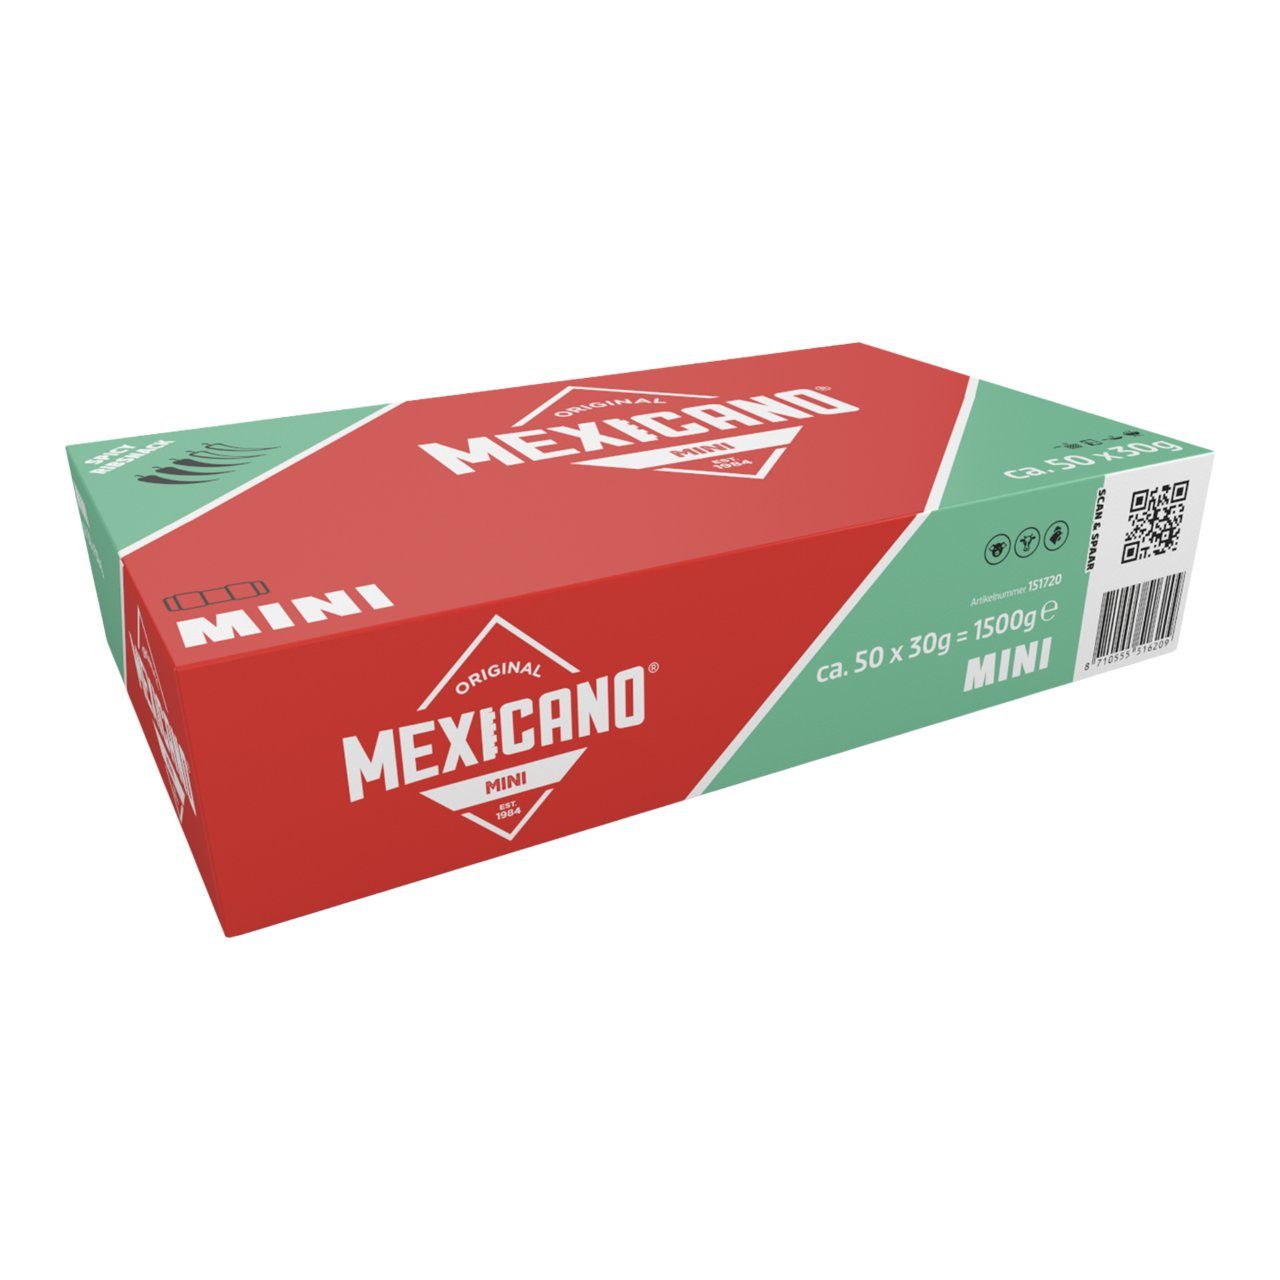 Mexicano mini